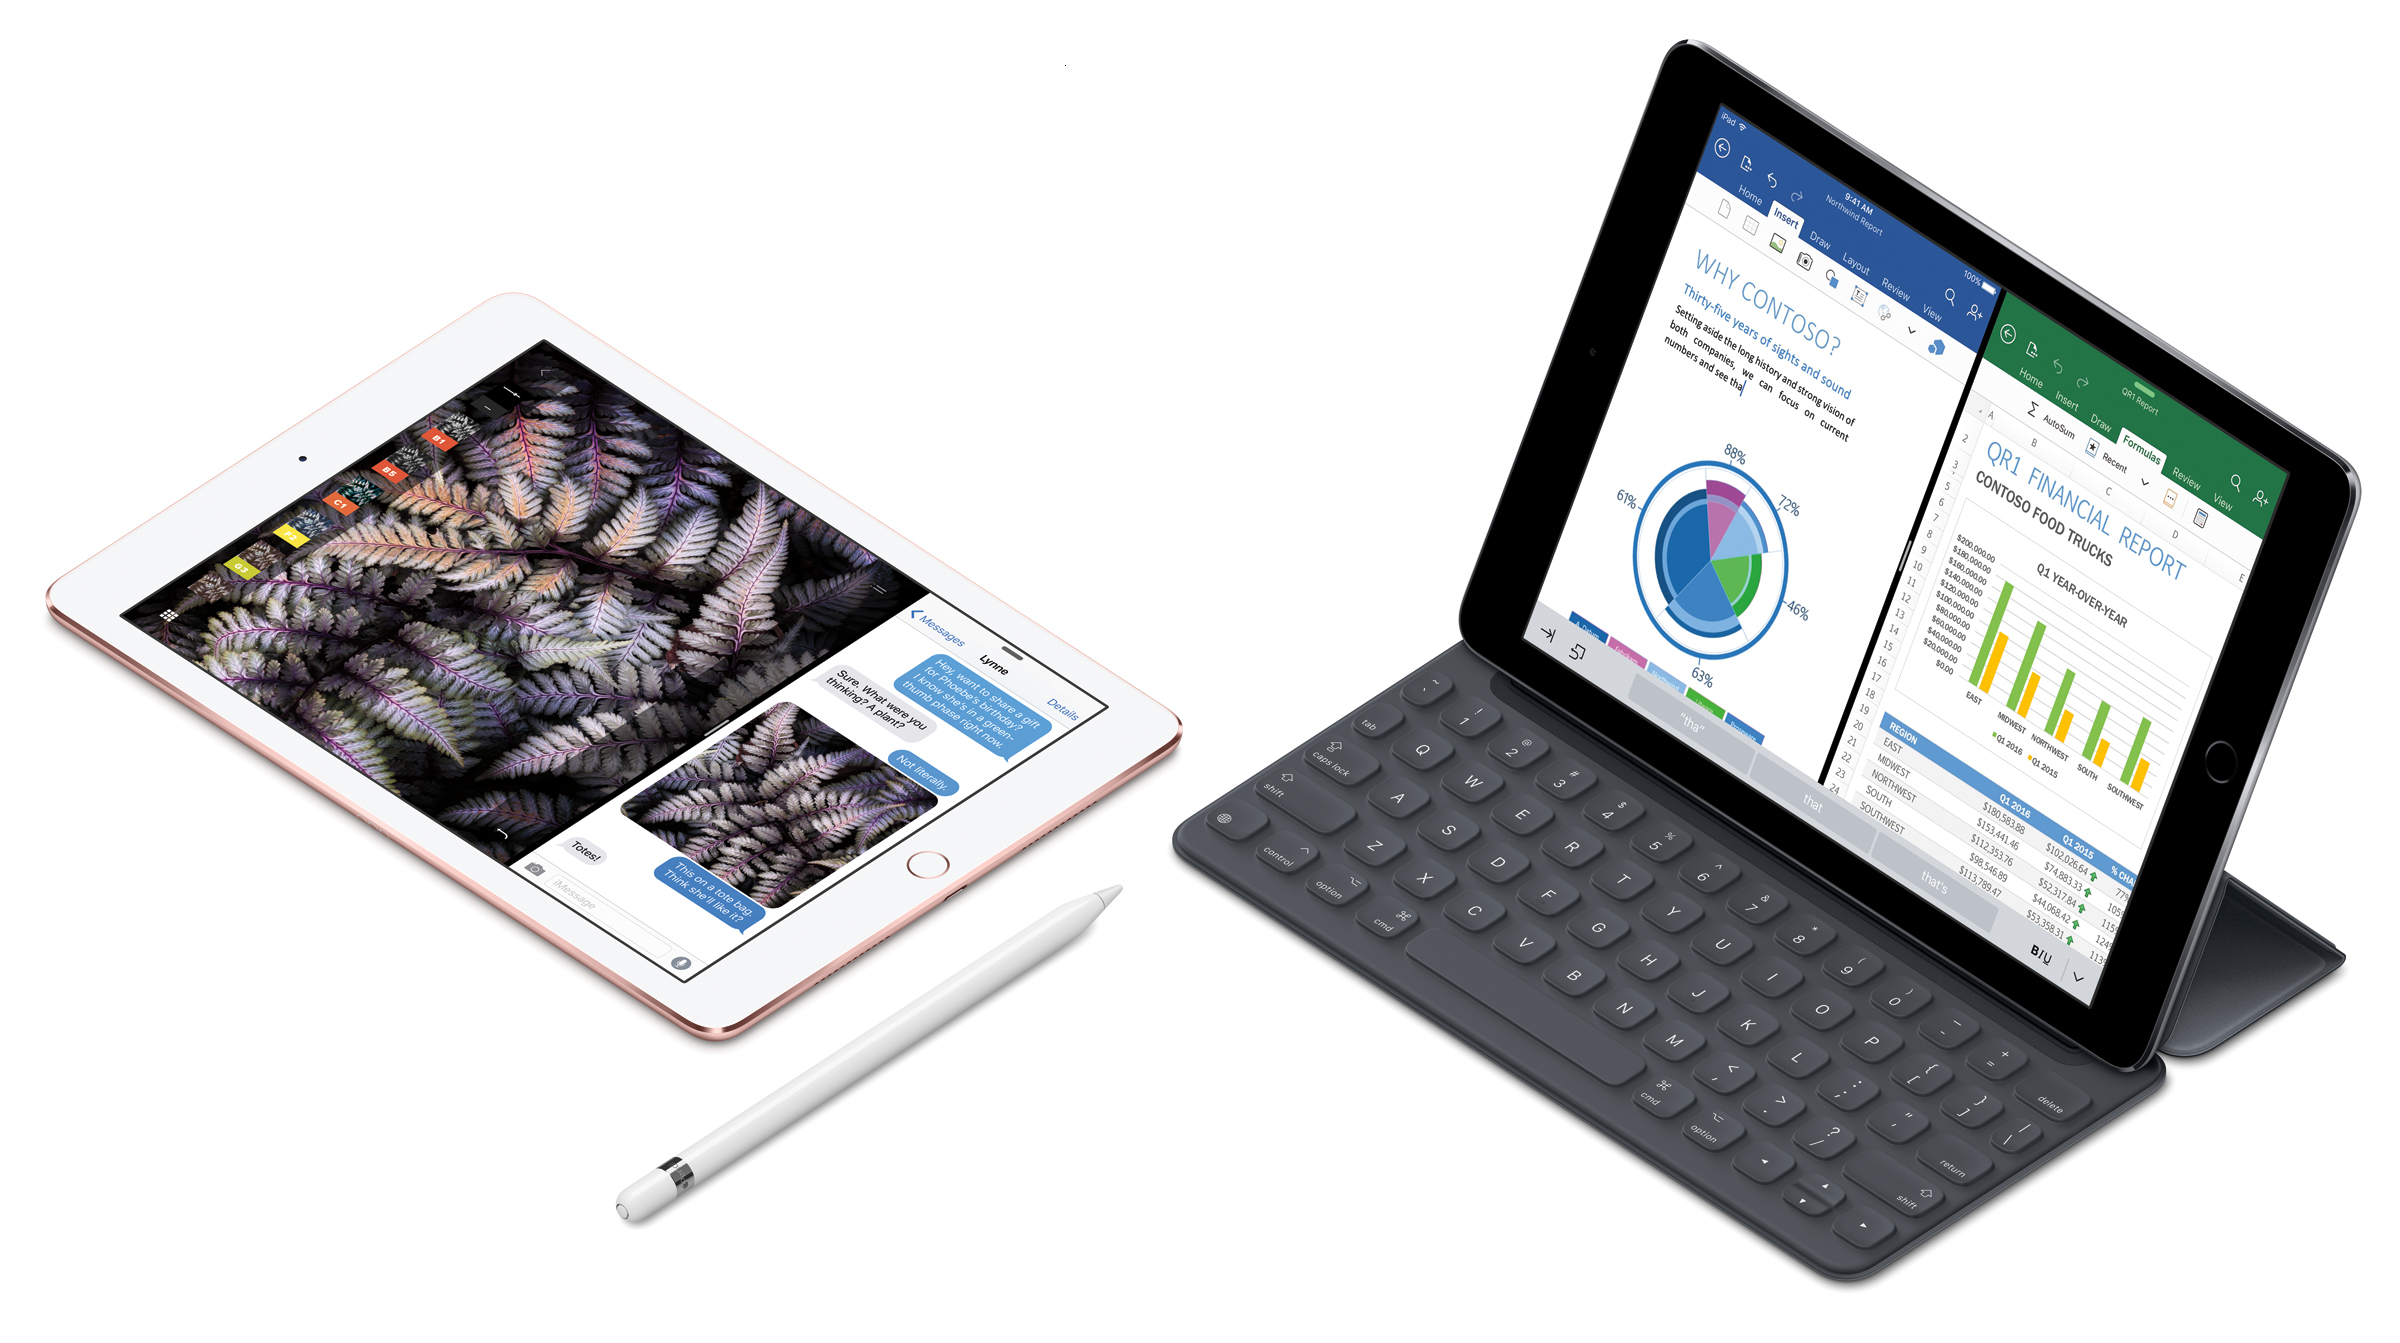 iPad Air 2/ iPad Air iPad Keyboard Case for iPad 6th Gen 2018 /iPad 5th Gen 2017/ iPad Pro 9.7 2016 Black 360 Degree Rotating Bluetooth Keyboard Cover 